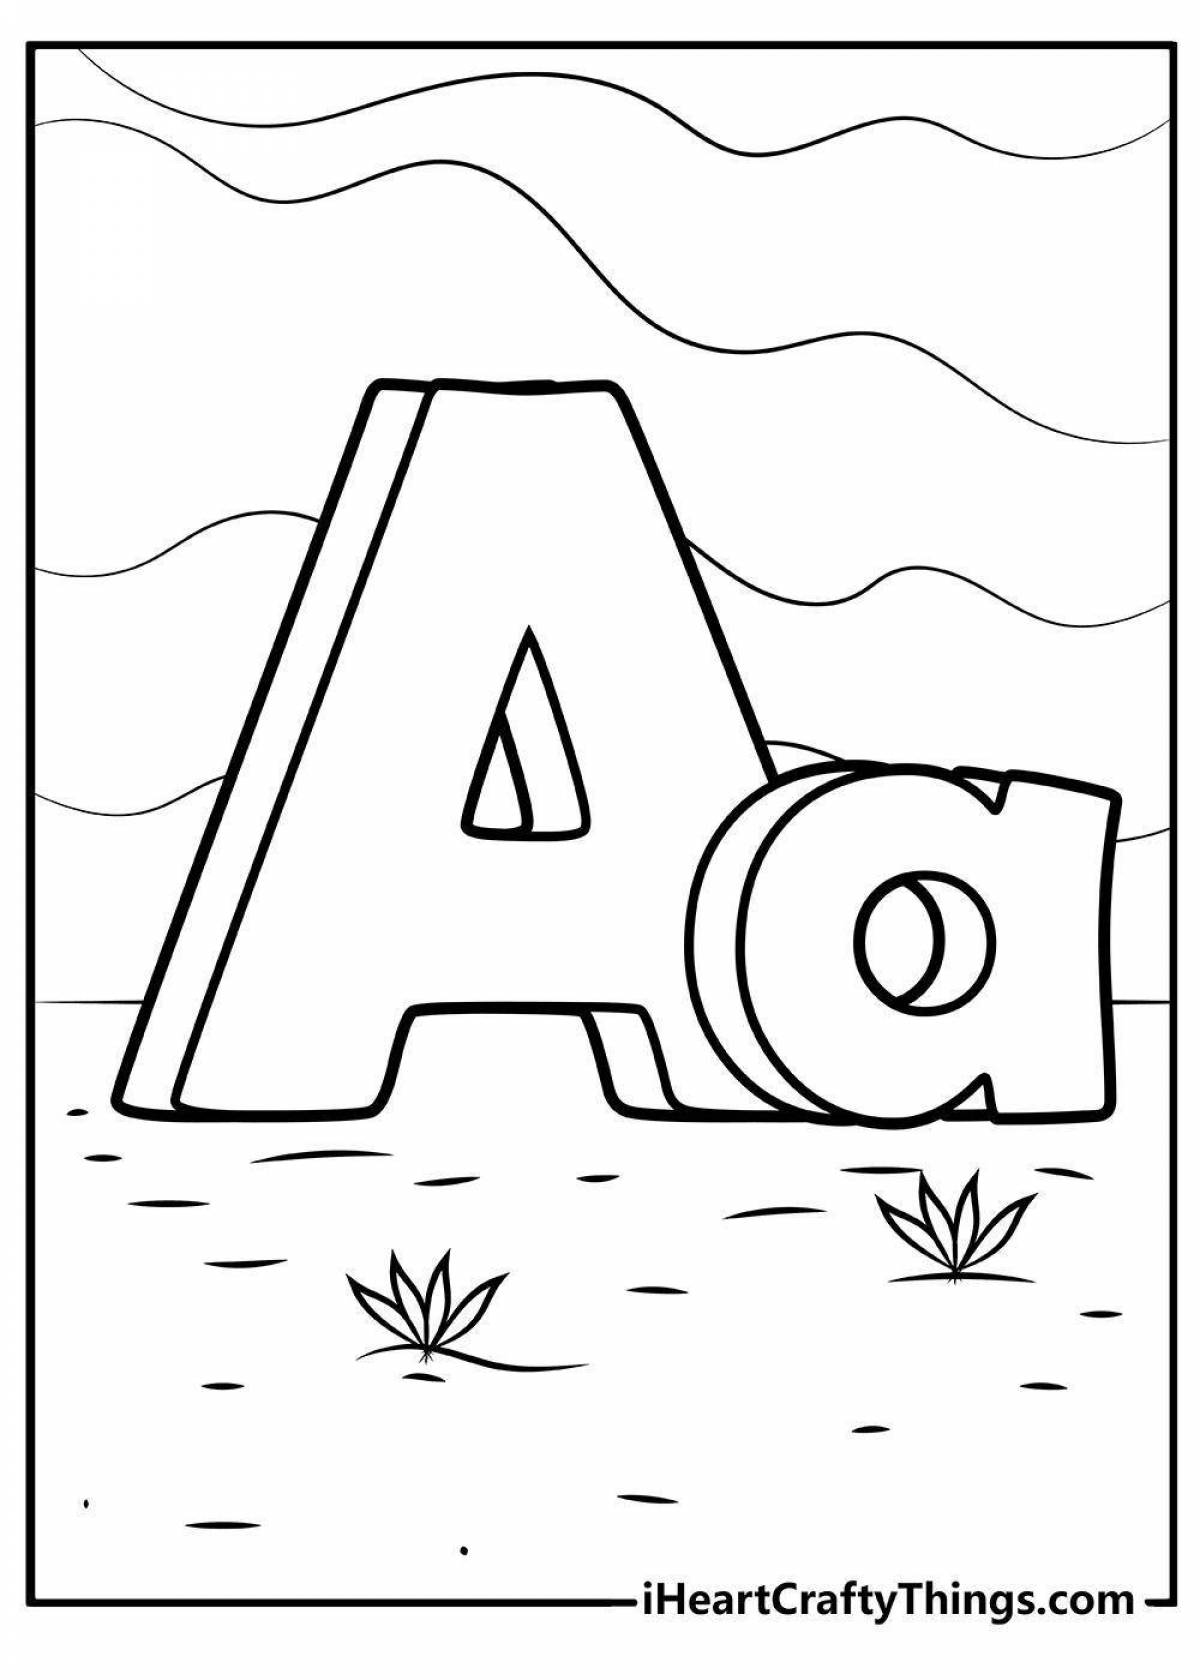 Colouring adorable alphabet lori